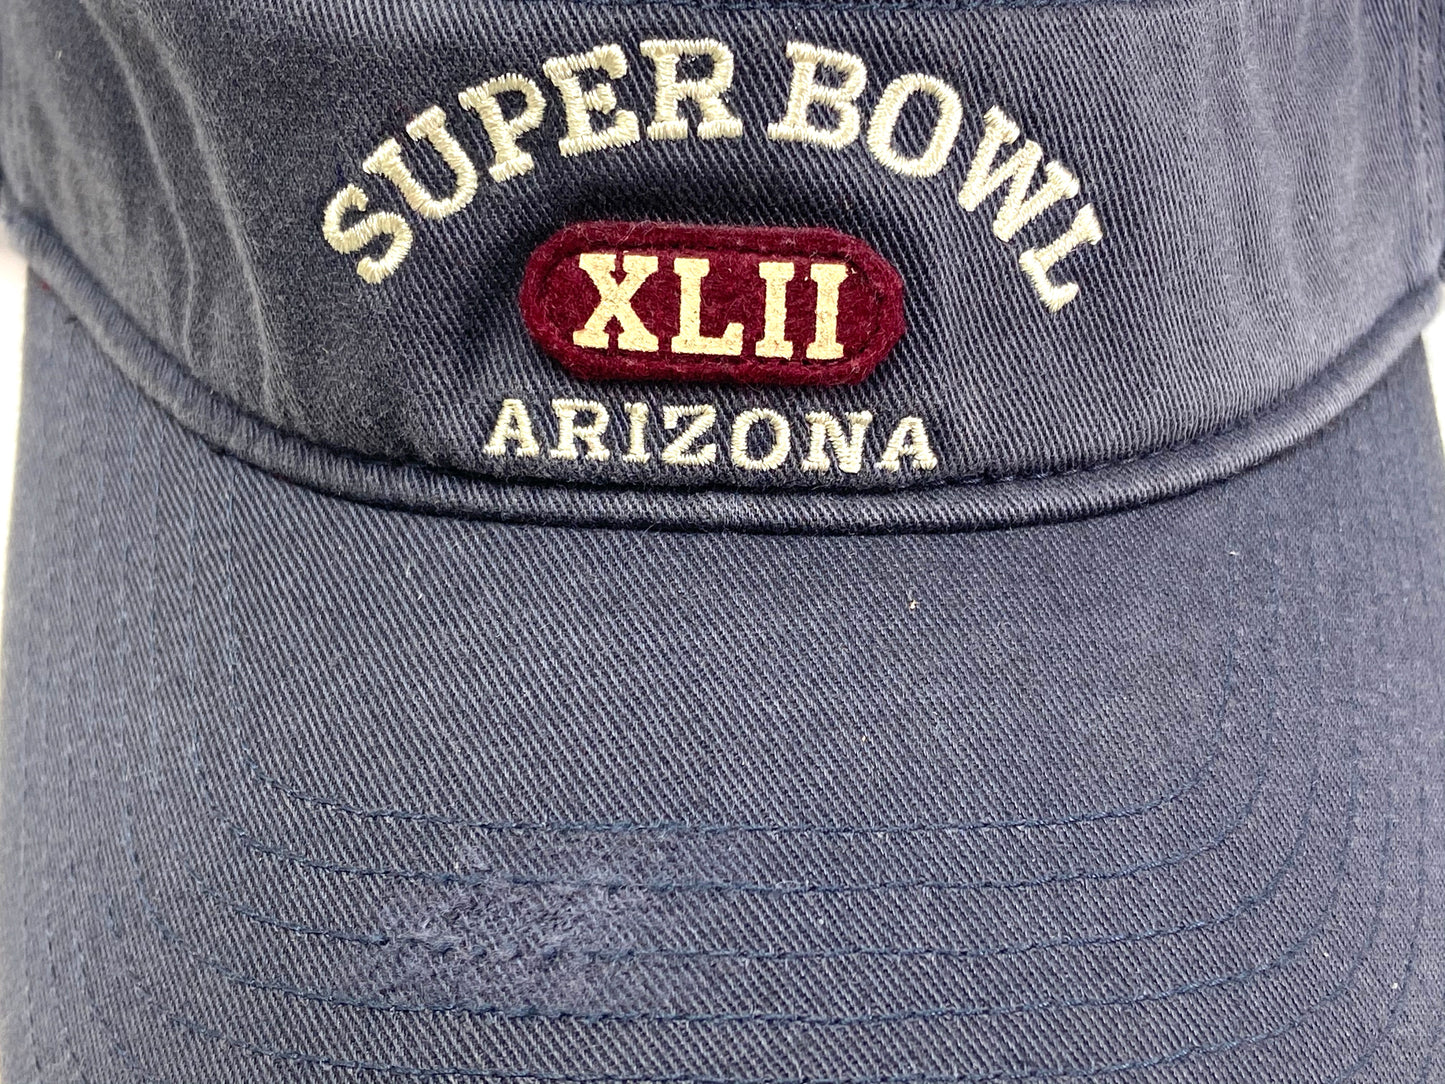 Super Bowl XLII (42) NFL Commemorative NOS Visors